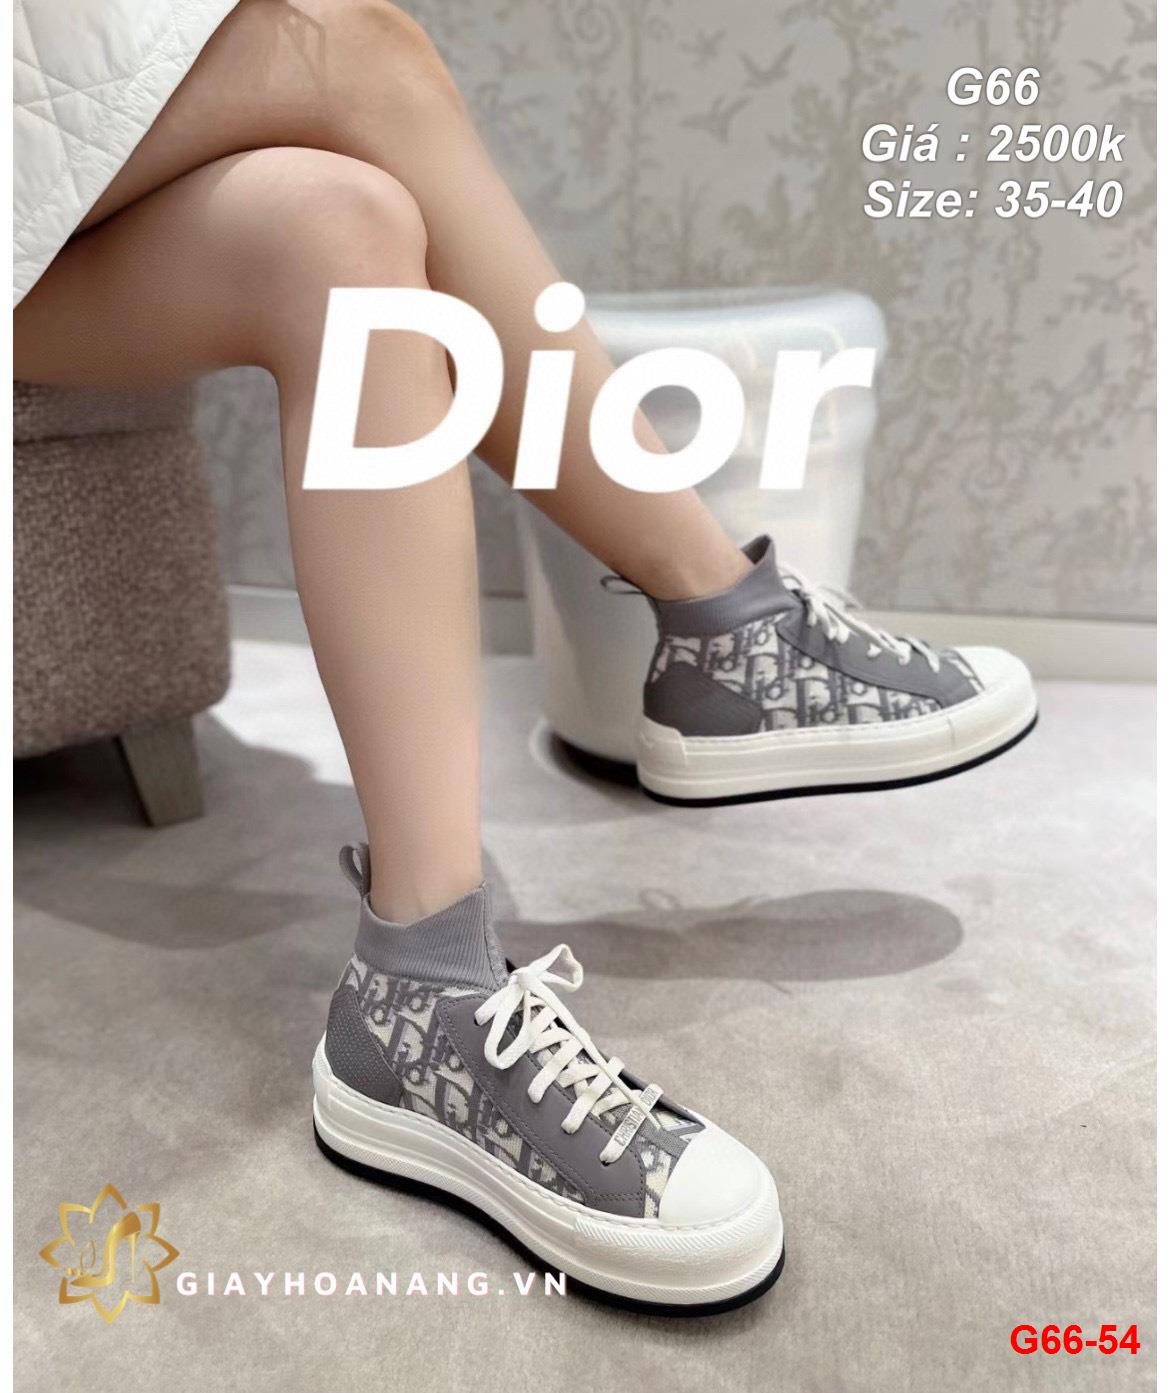 G66-54 Dior giày thể thao siêu cấp